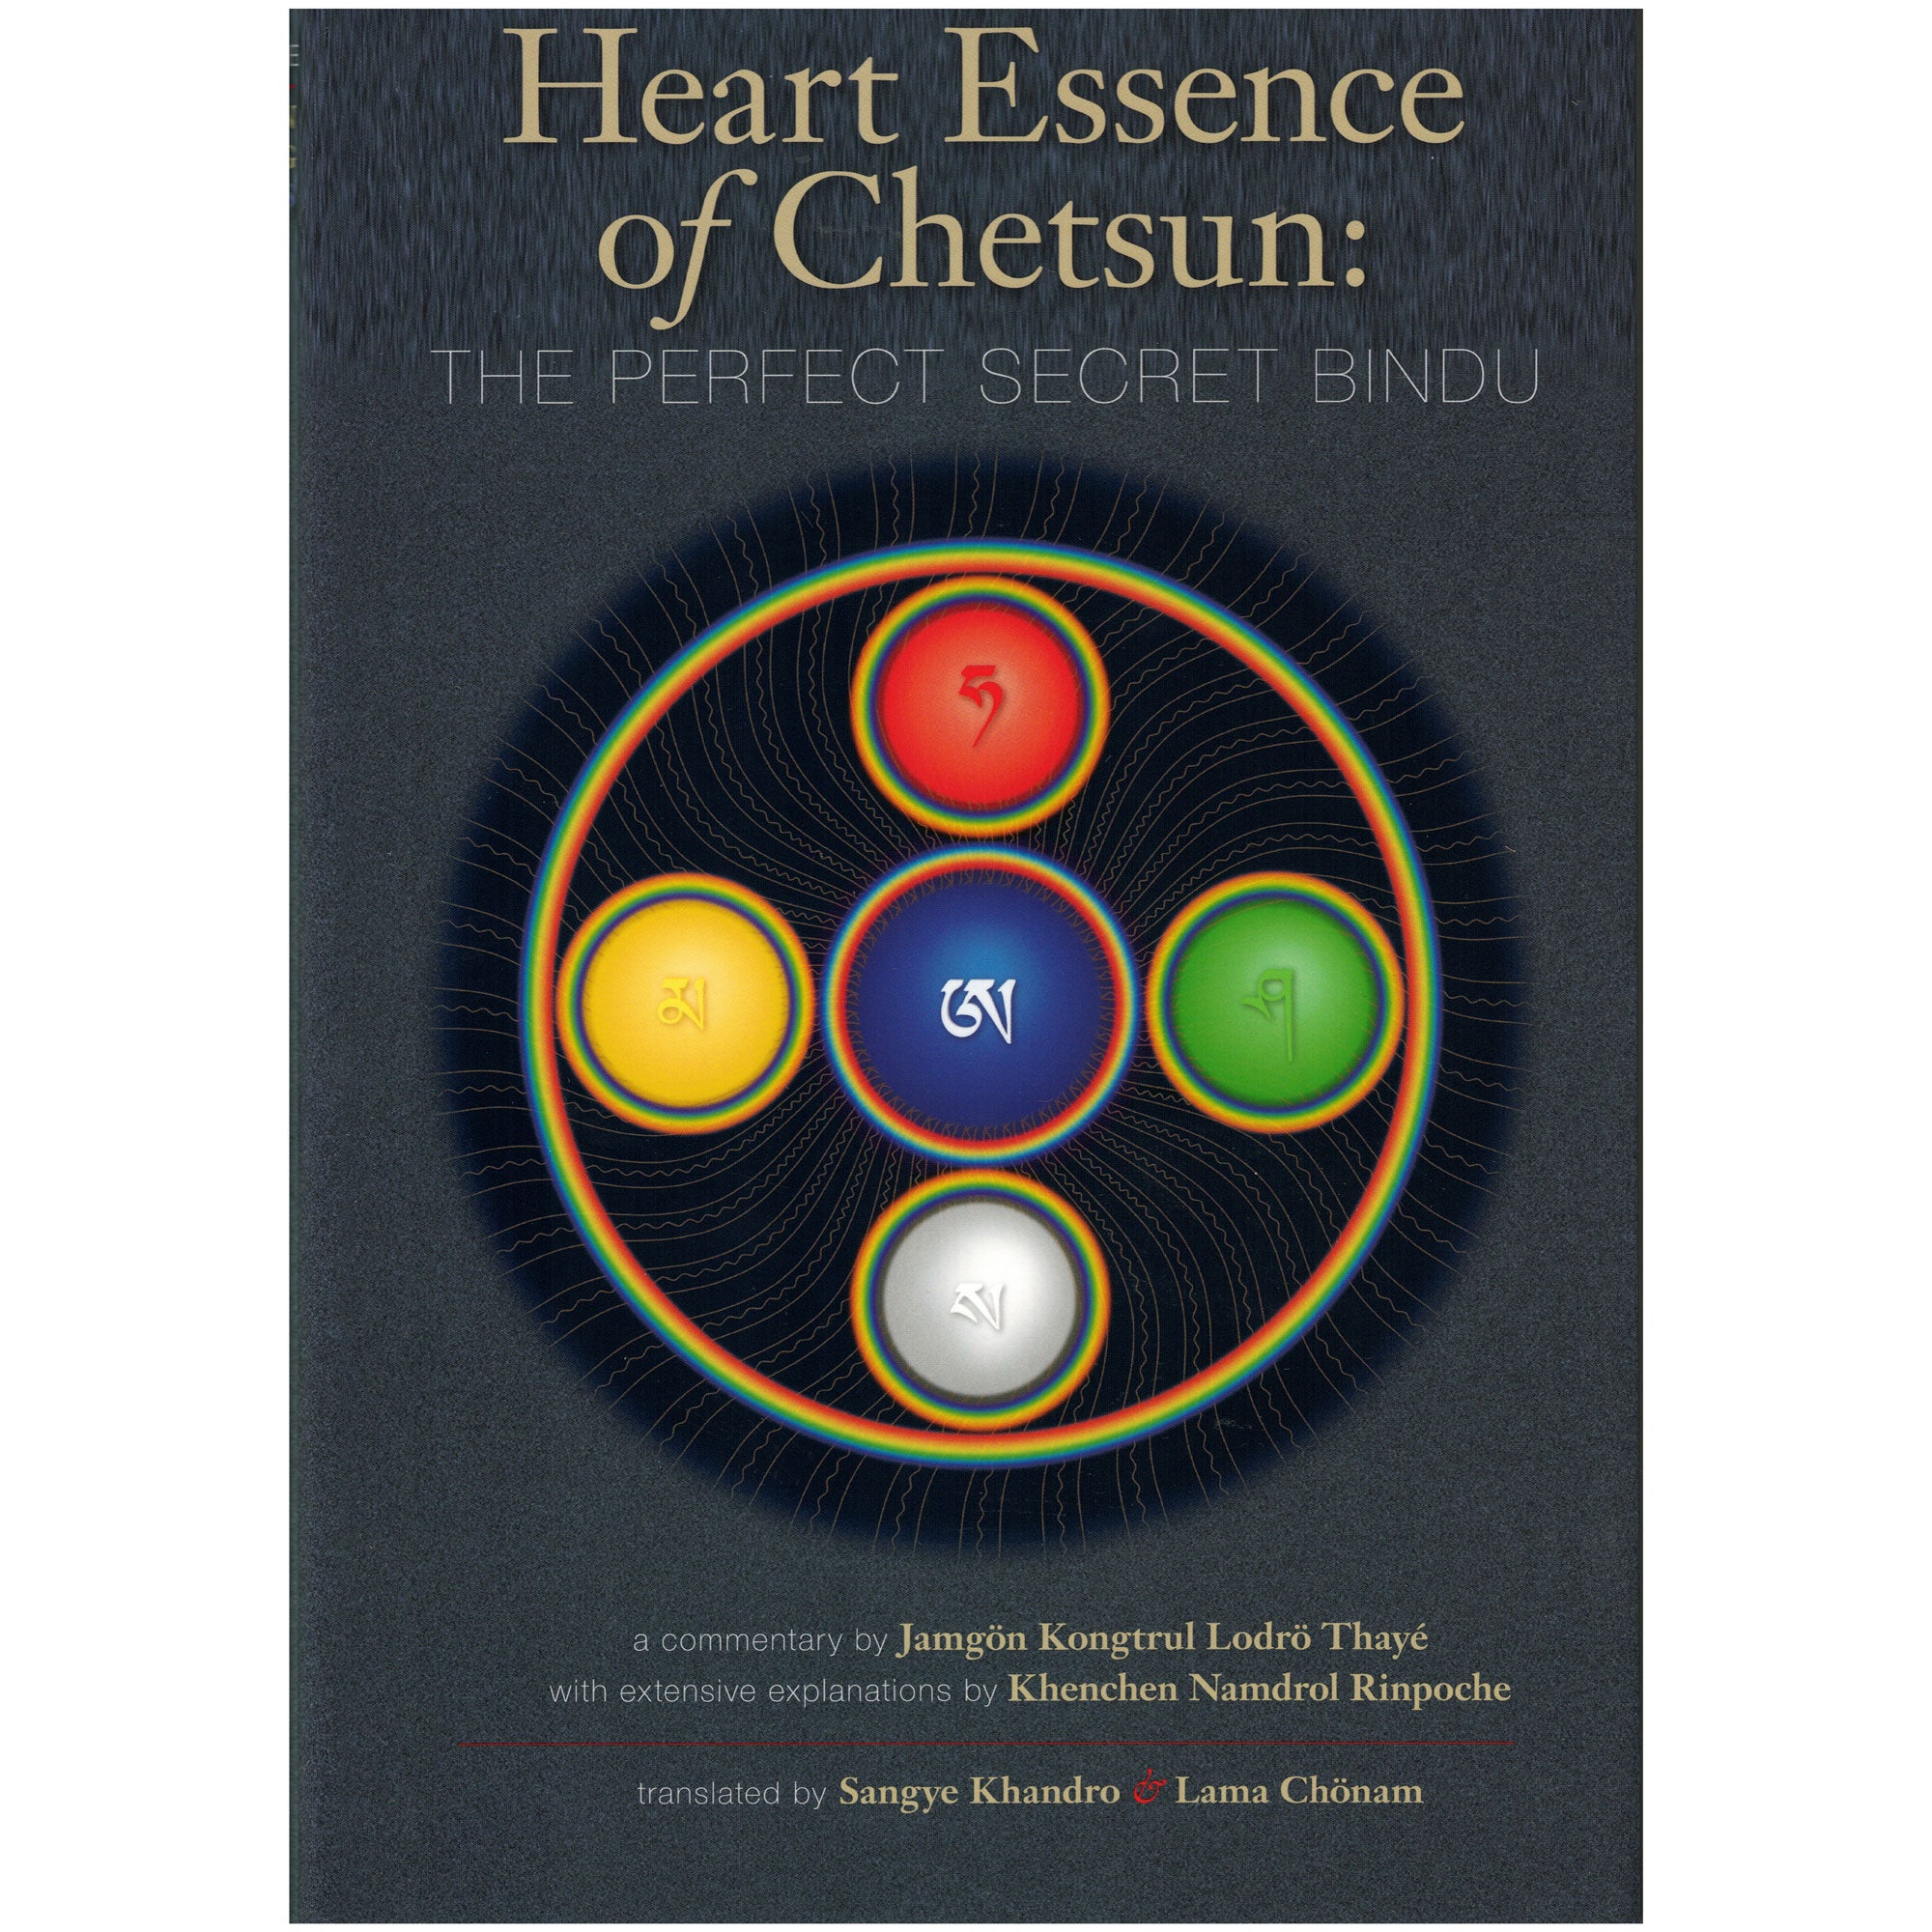 Heart Essence of Chetzun- Perfect Secret Bindu